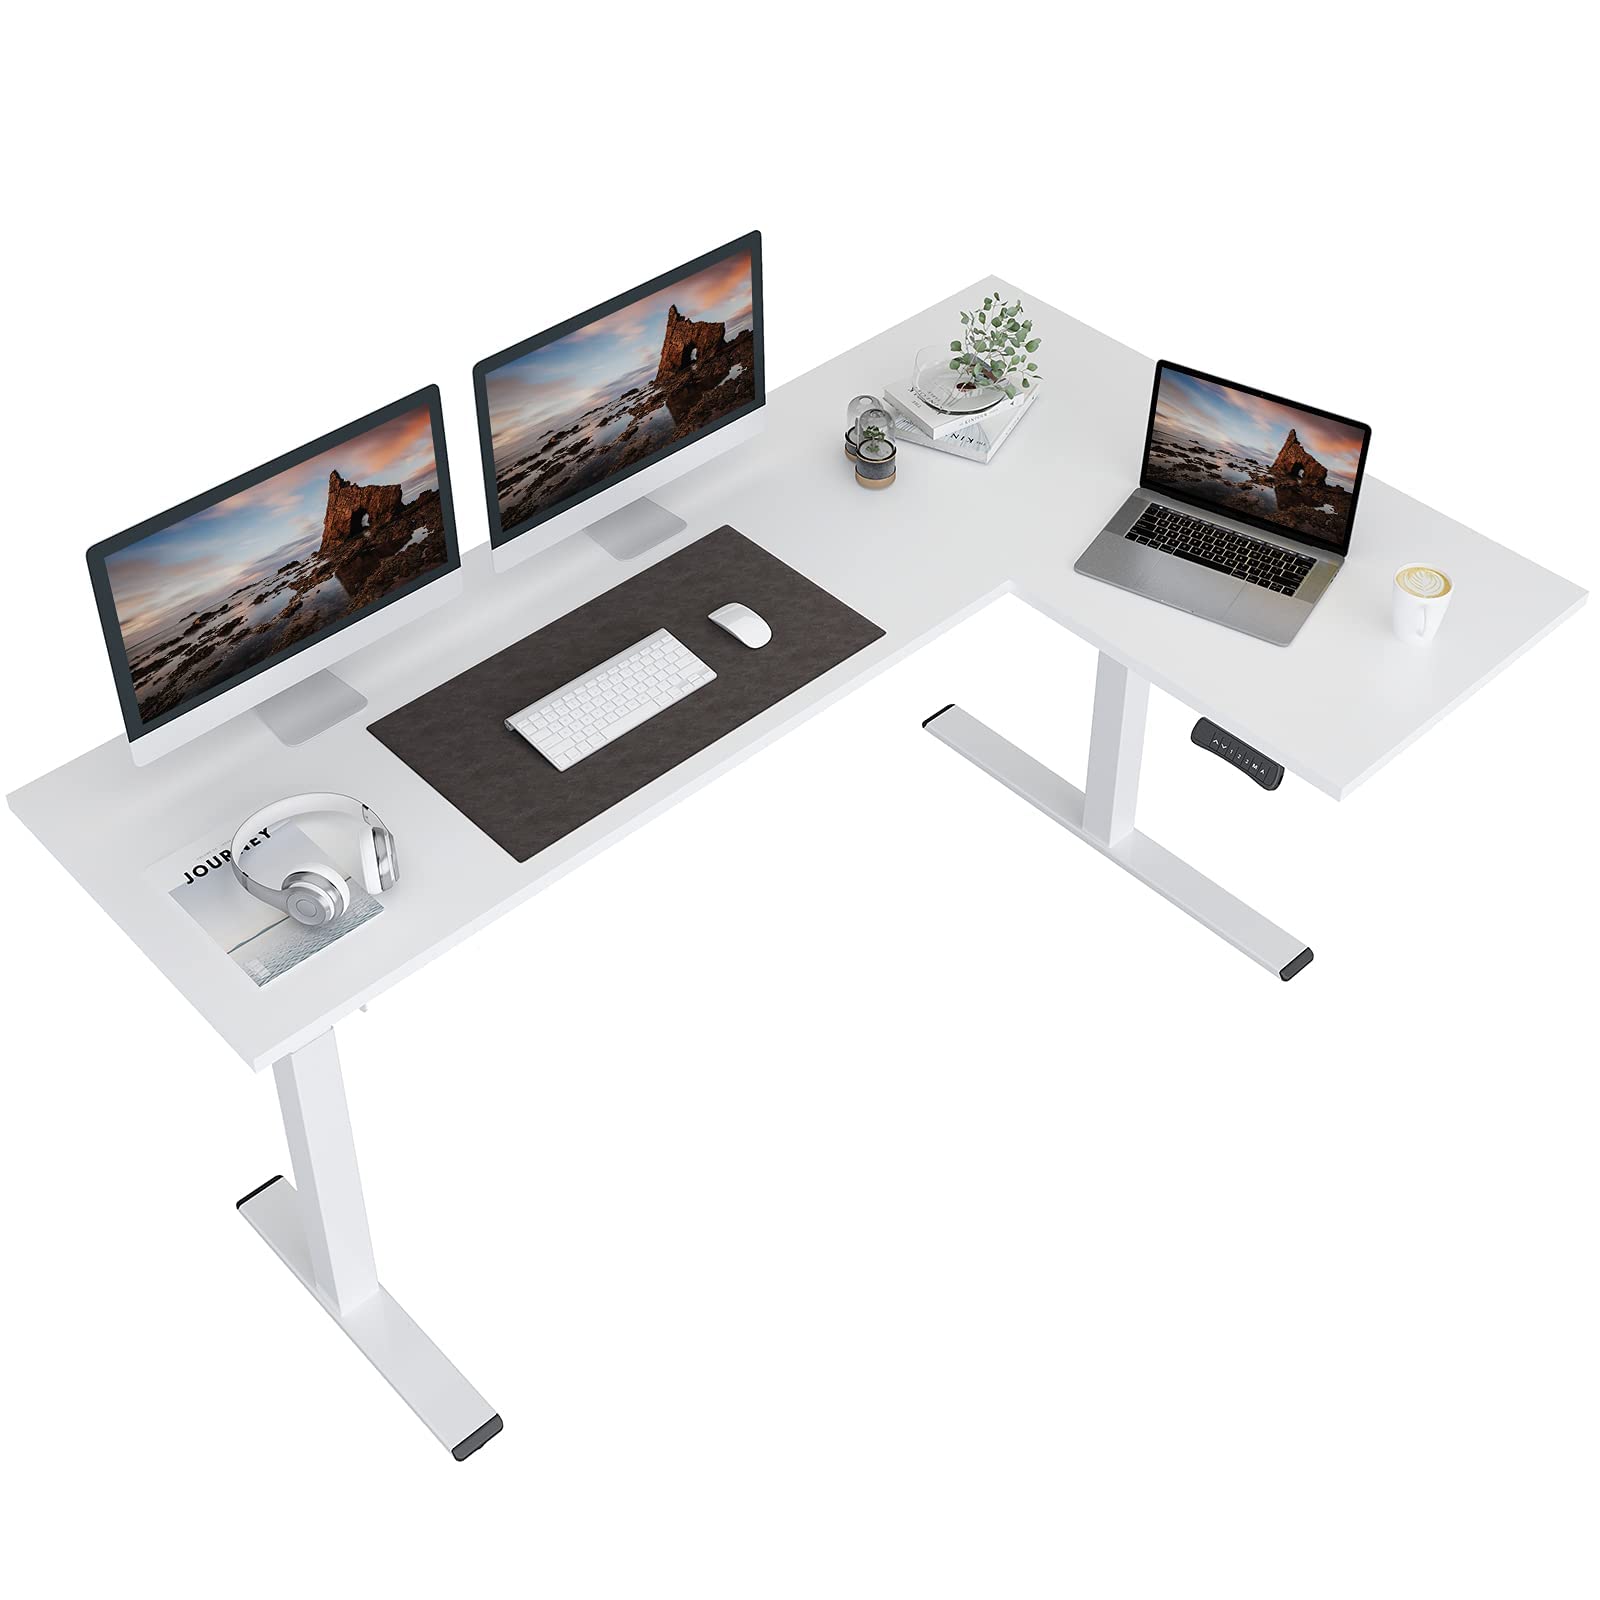 FLEXISPOT corner Desk Dual Motor L Shaped computer Electric Standing Desk Sit Stand Up Desk Height Adjustable Desk Home Office T